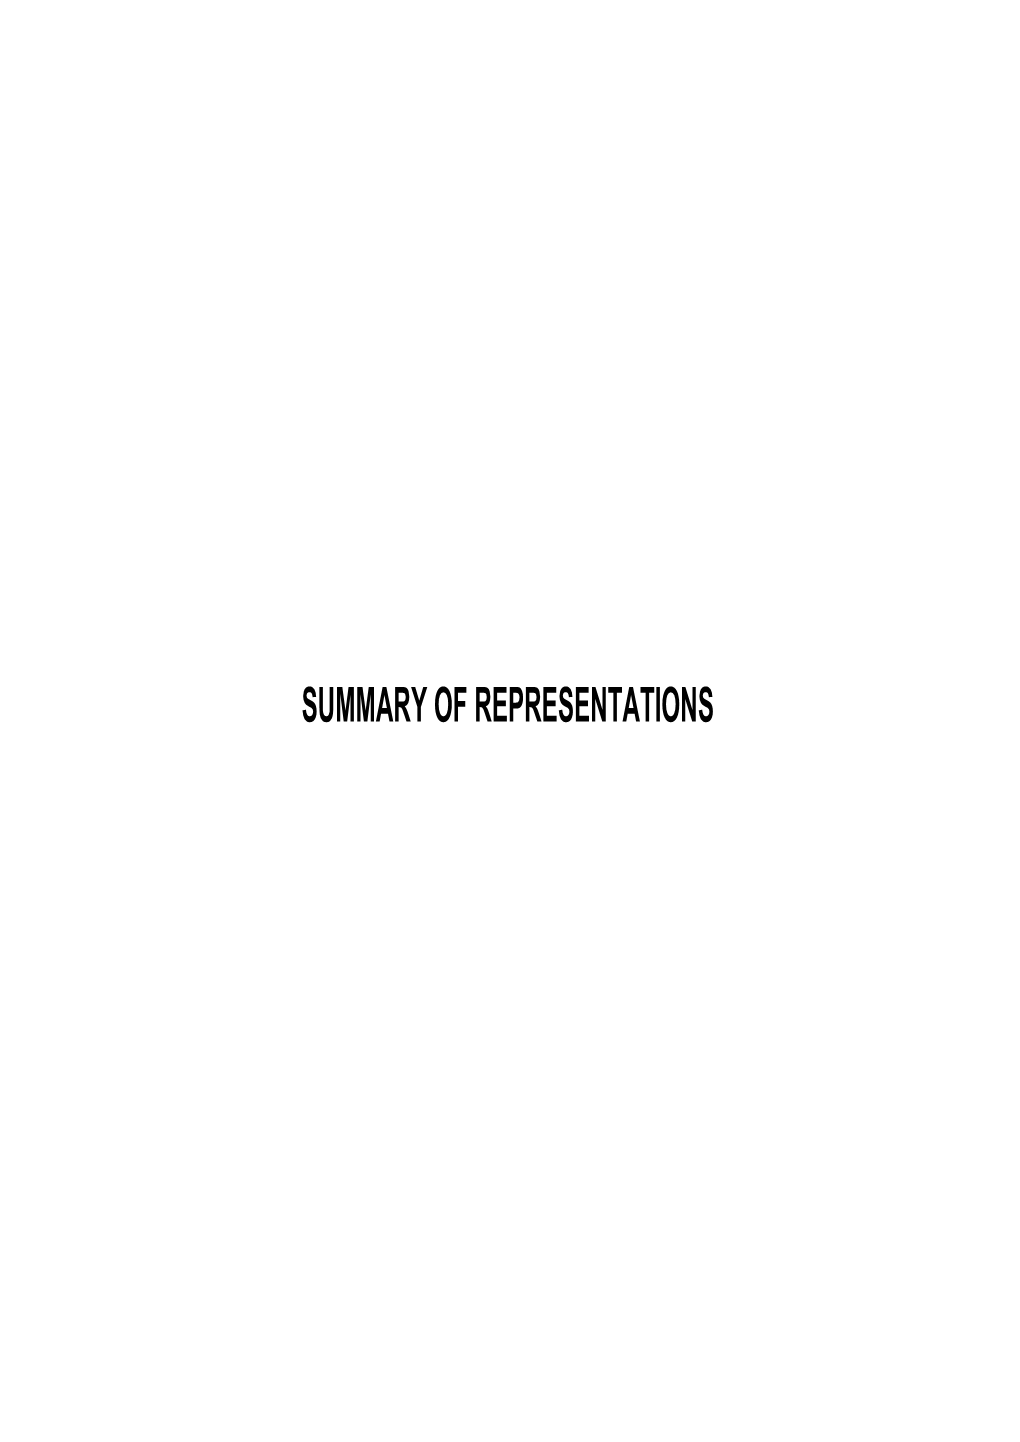 Summary of Representations